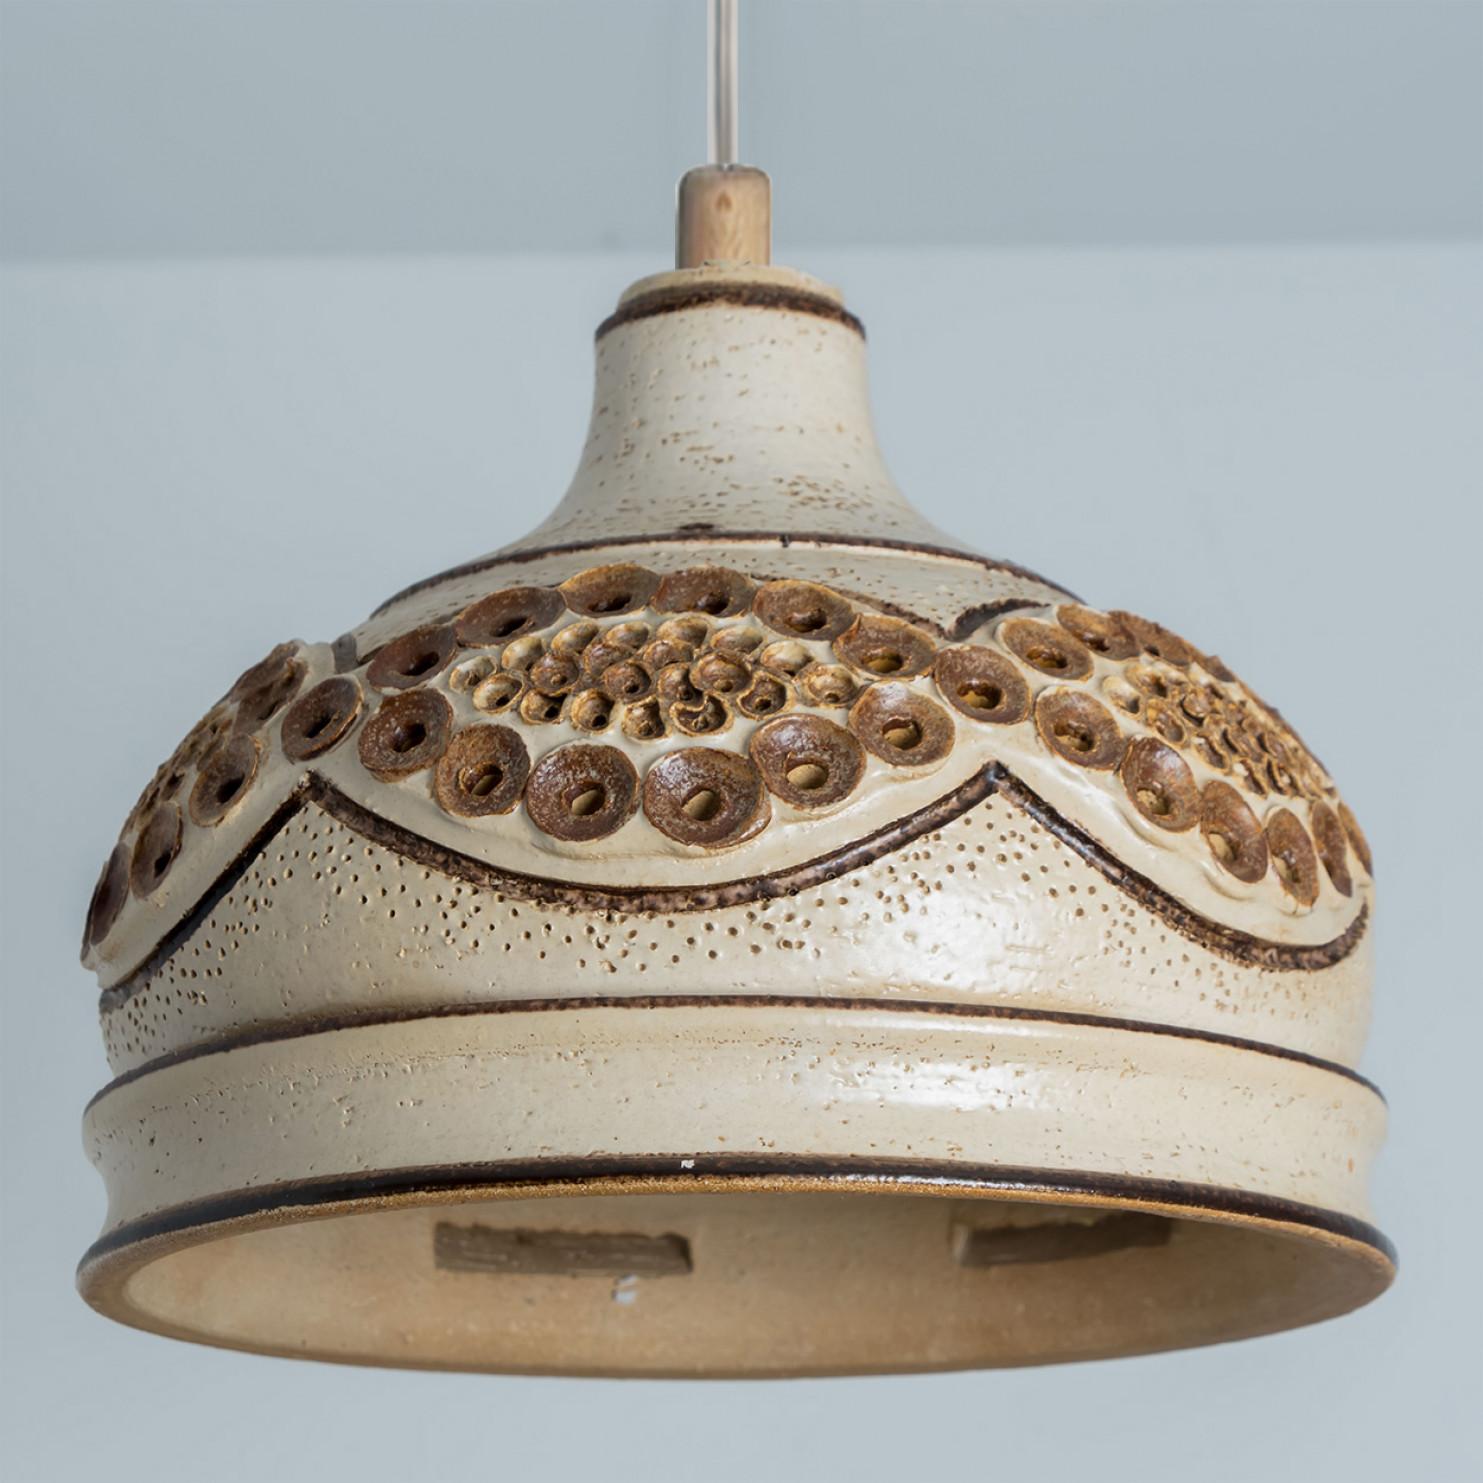 Superbe lampe suspendue ronde en forme de bol, fabriquée dans les années 1970 au Danemark, avec des céramiques beiges aux riches couleurs brunes. Nous disposons également d'une multitude d'ensembles et de compositions lumineuses uniques en céramique